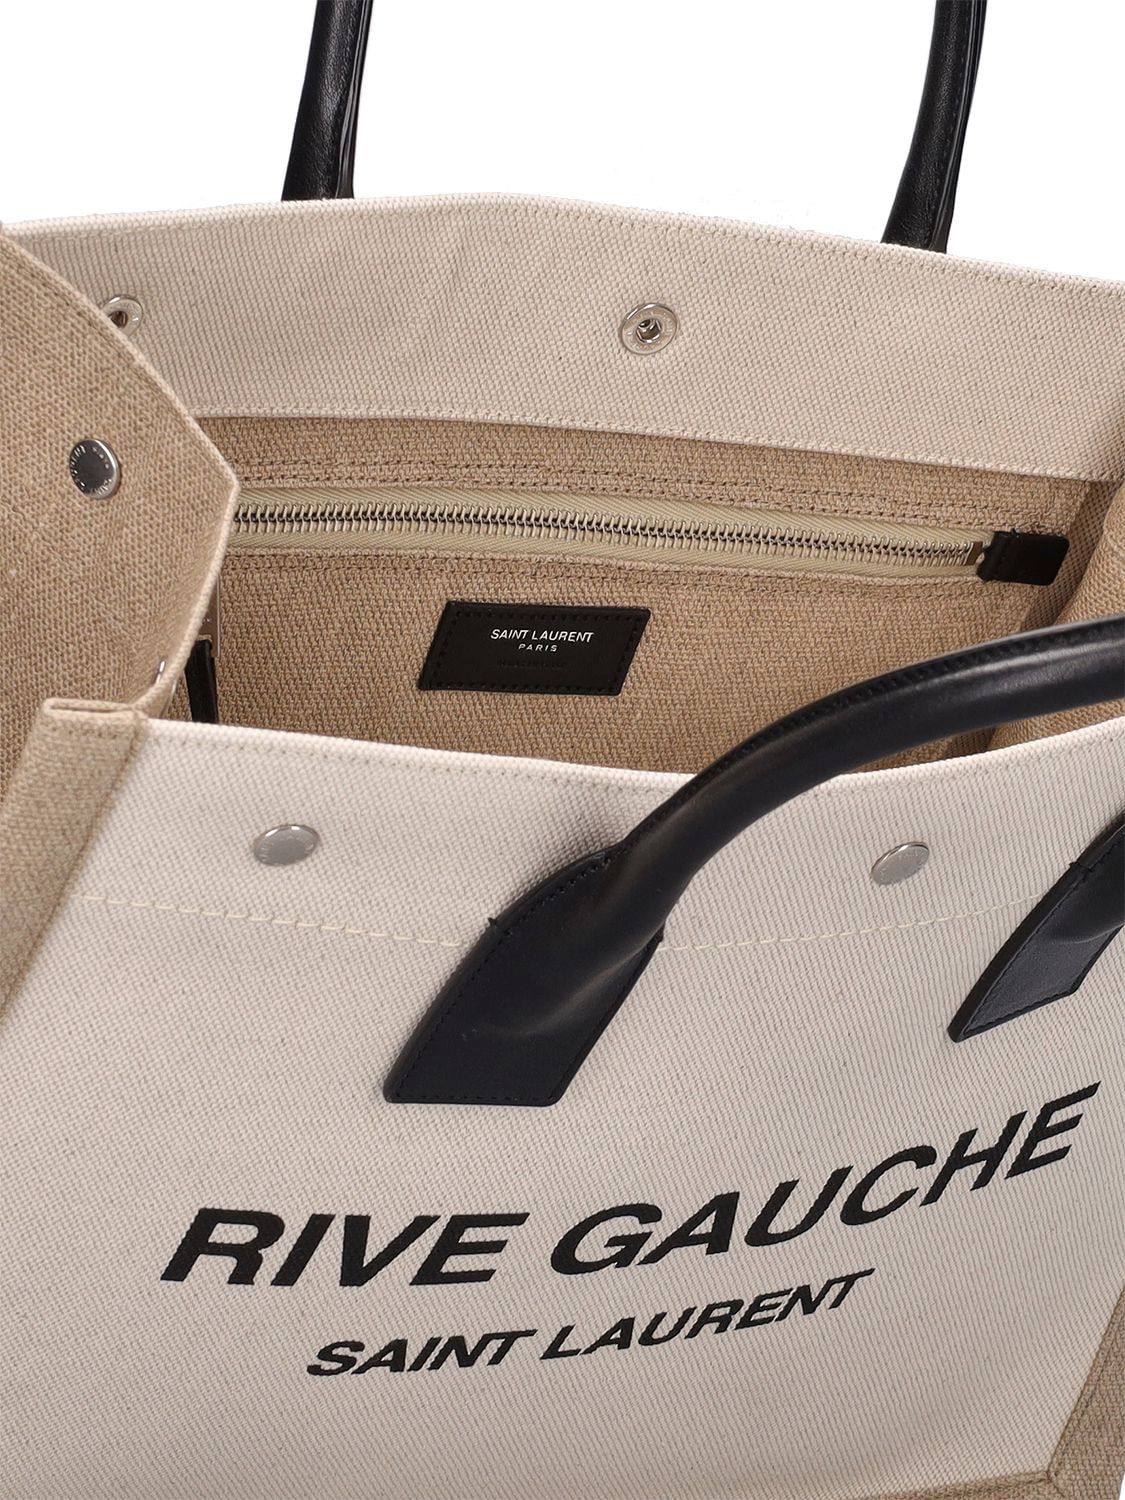 Shop Saint Laurent Rive Gauche Tote Bag In Greige,black